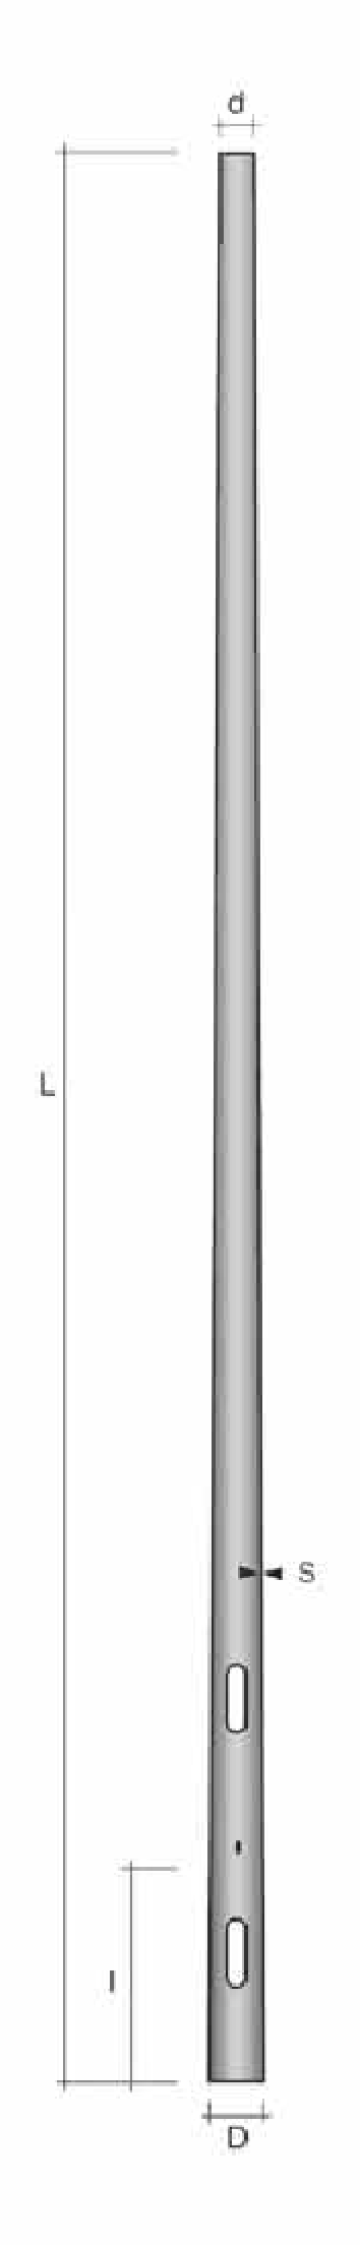 Stalp conic ingropat h=3.5m de la Metalsafe Lighting Srl